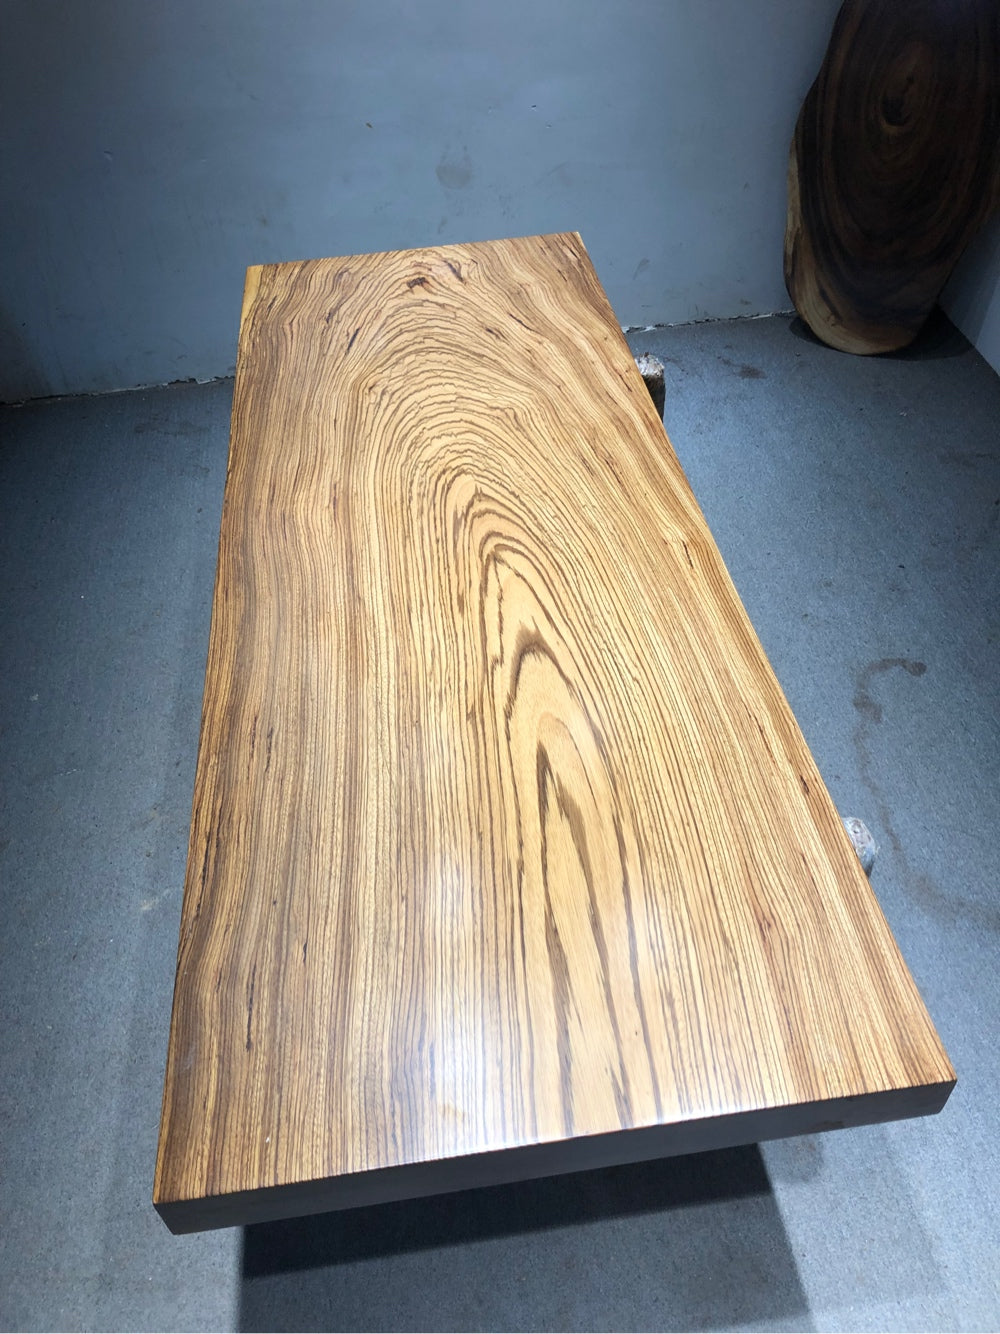 Zingana træ udtrækkeligt spisebord, levende kant spisebord, Zingana træplade sofabord